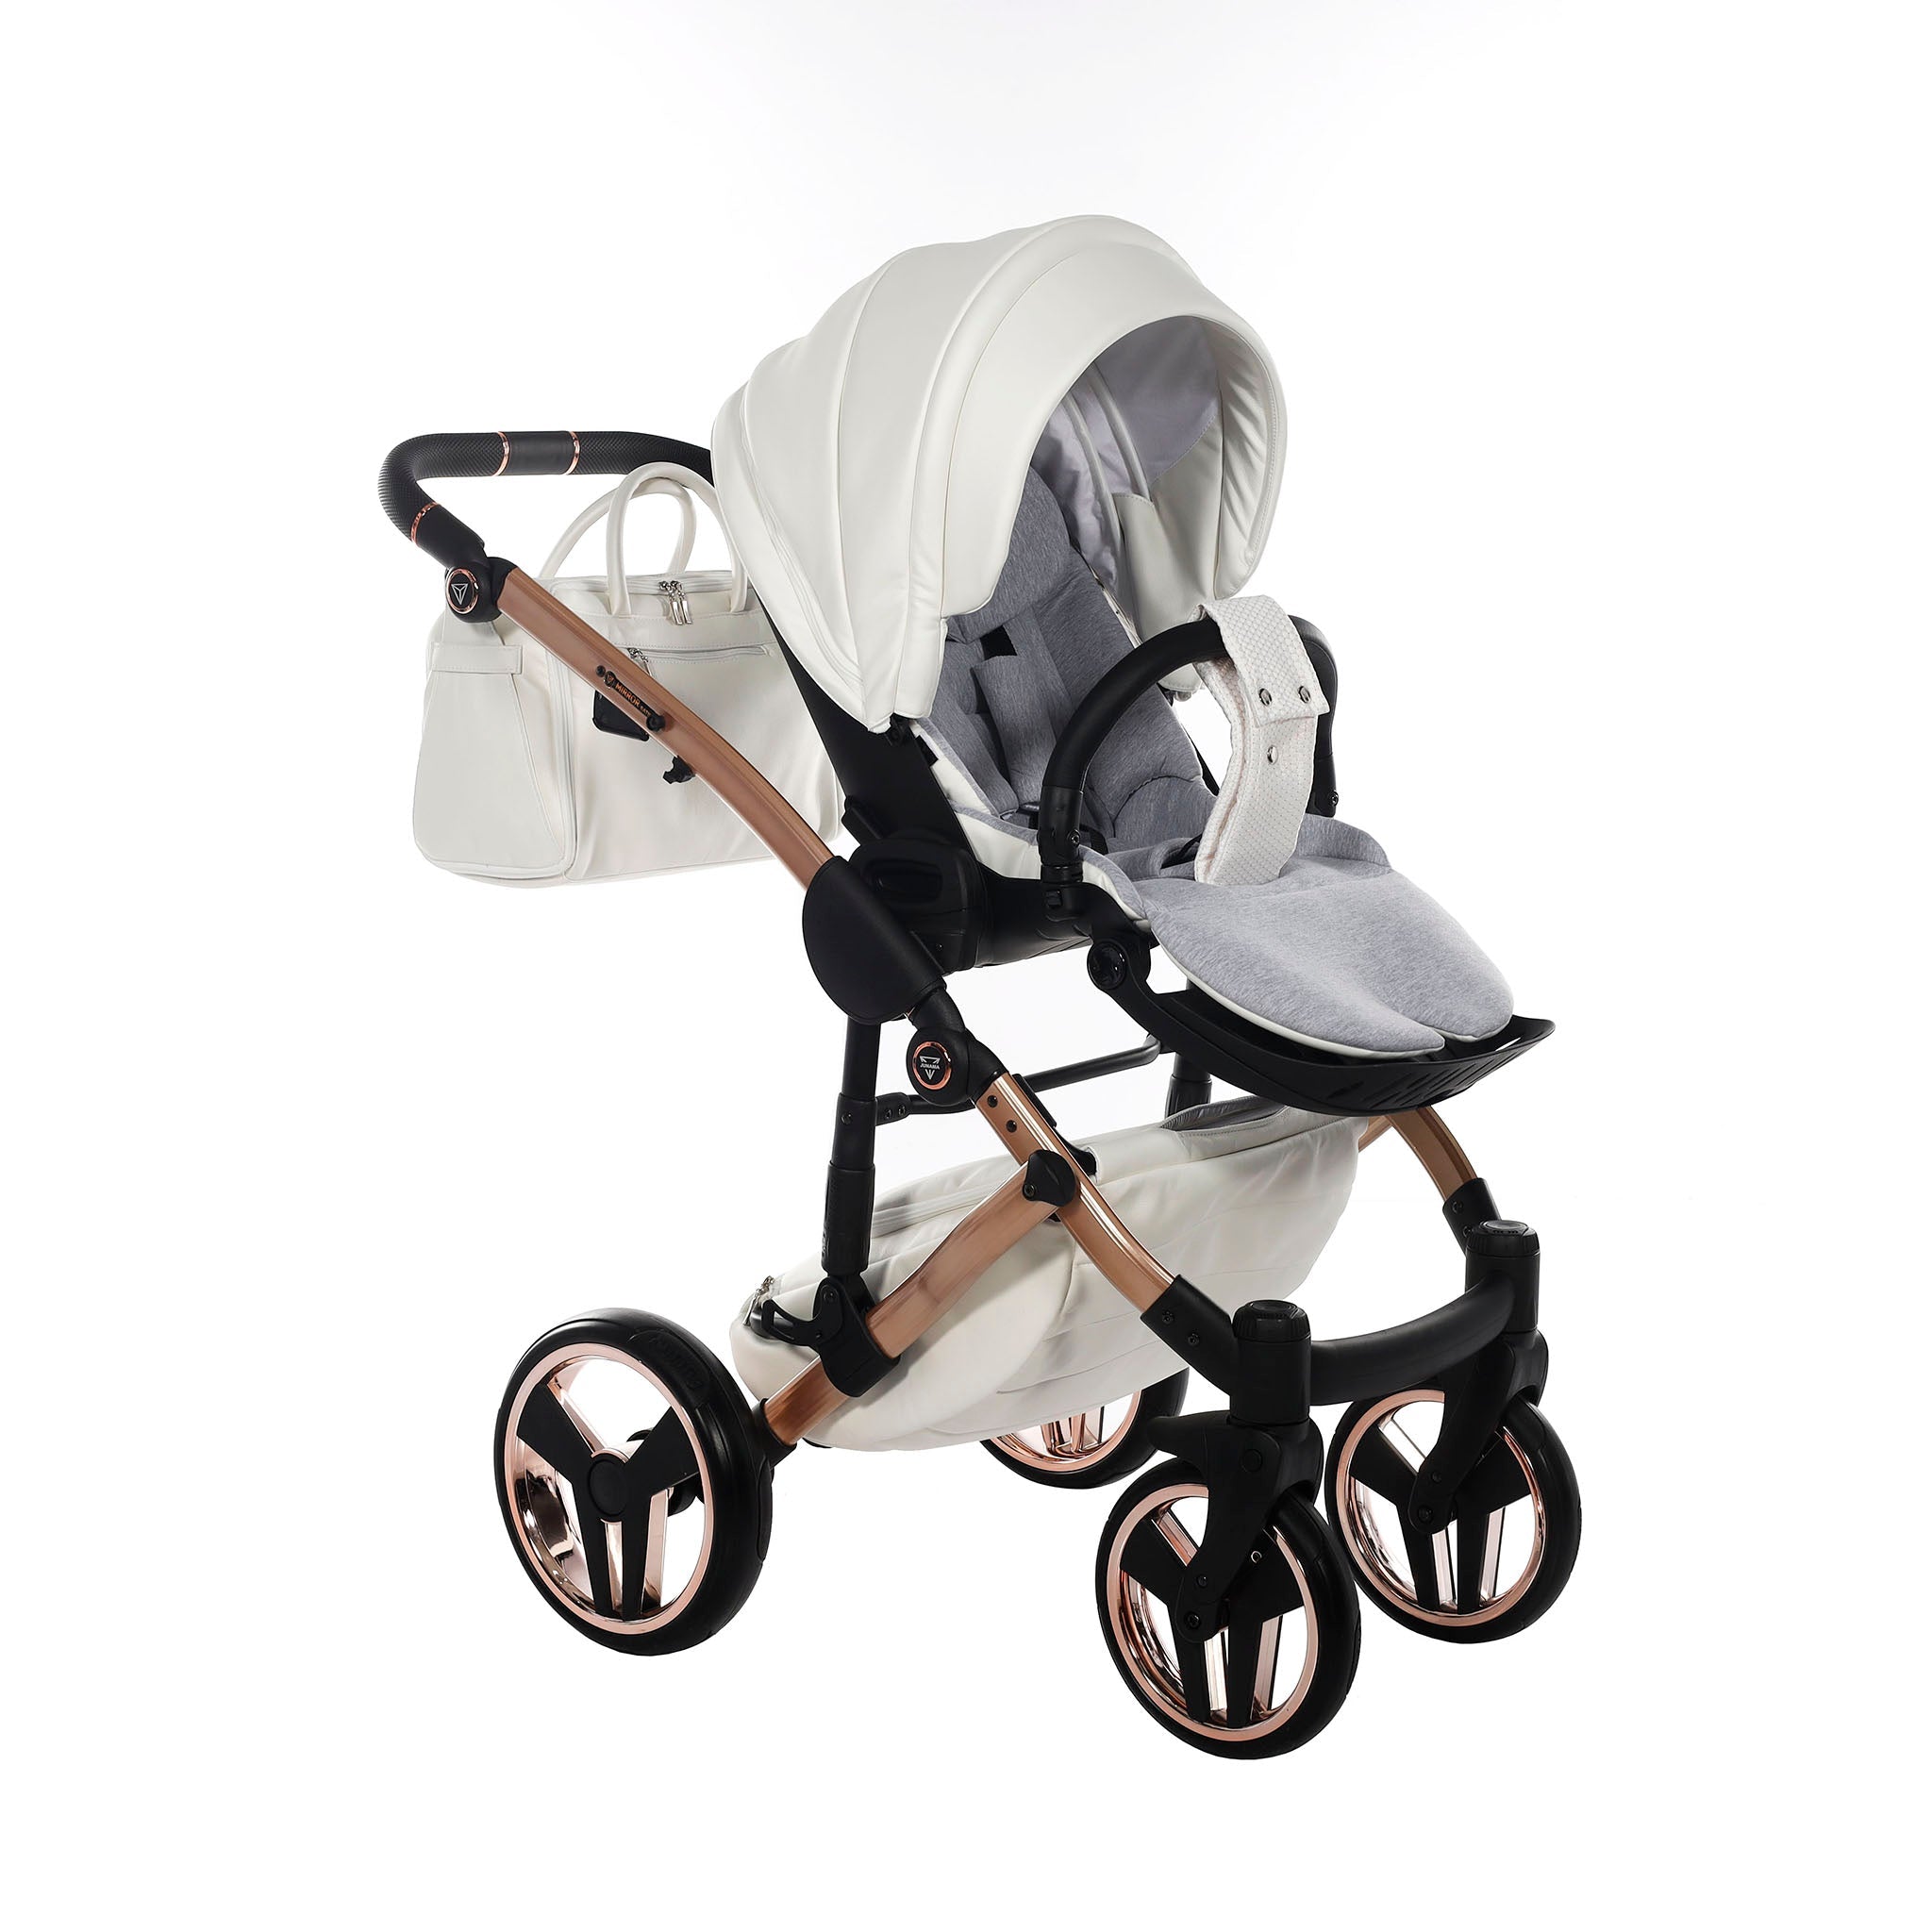 Junama Mirror Satin, baby prams or stroller 2 in 1 - Rose Gold, Code number: JUNMSAT05